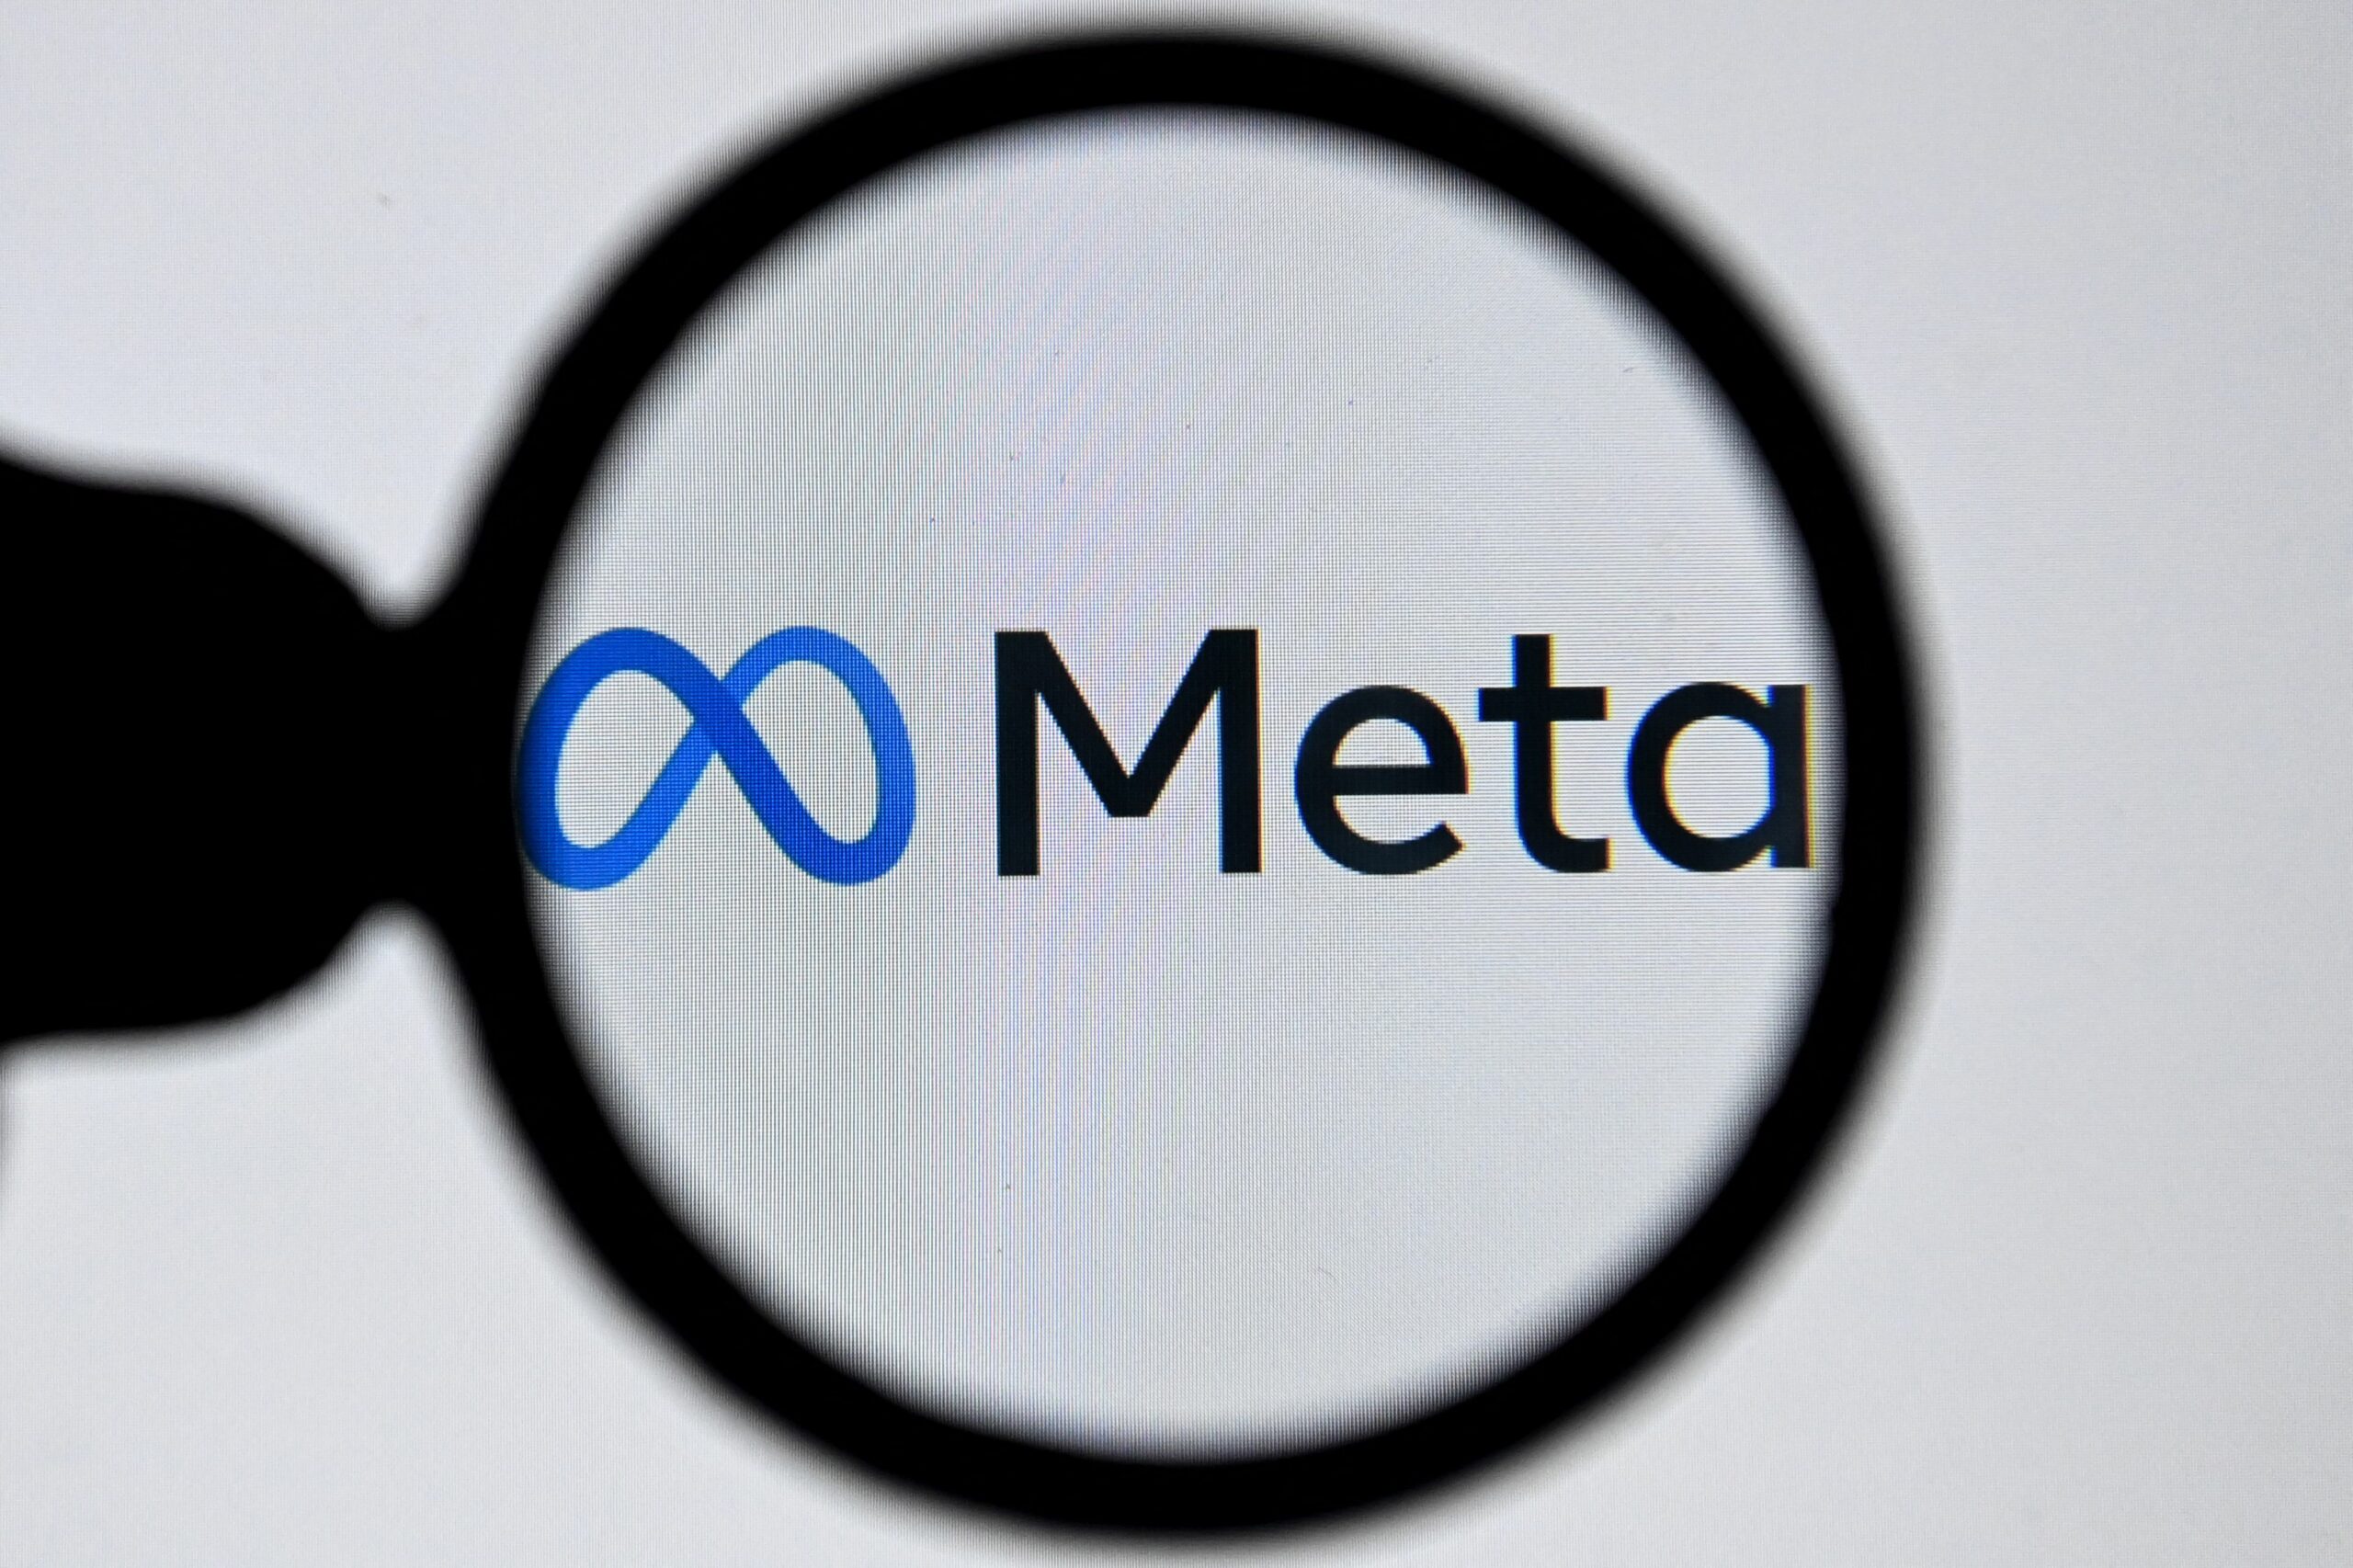 meta logo seen through a magnifying glass